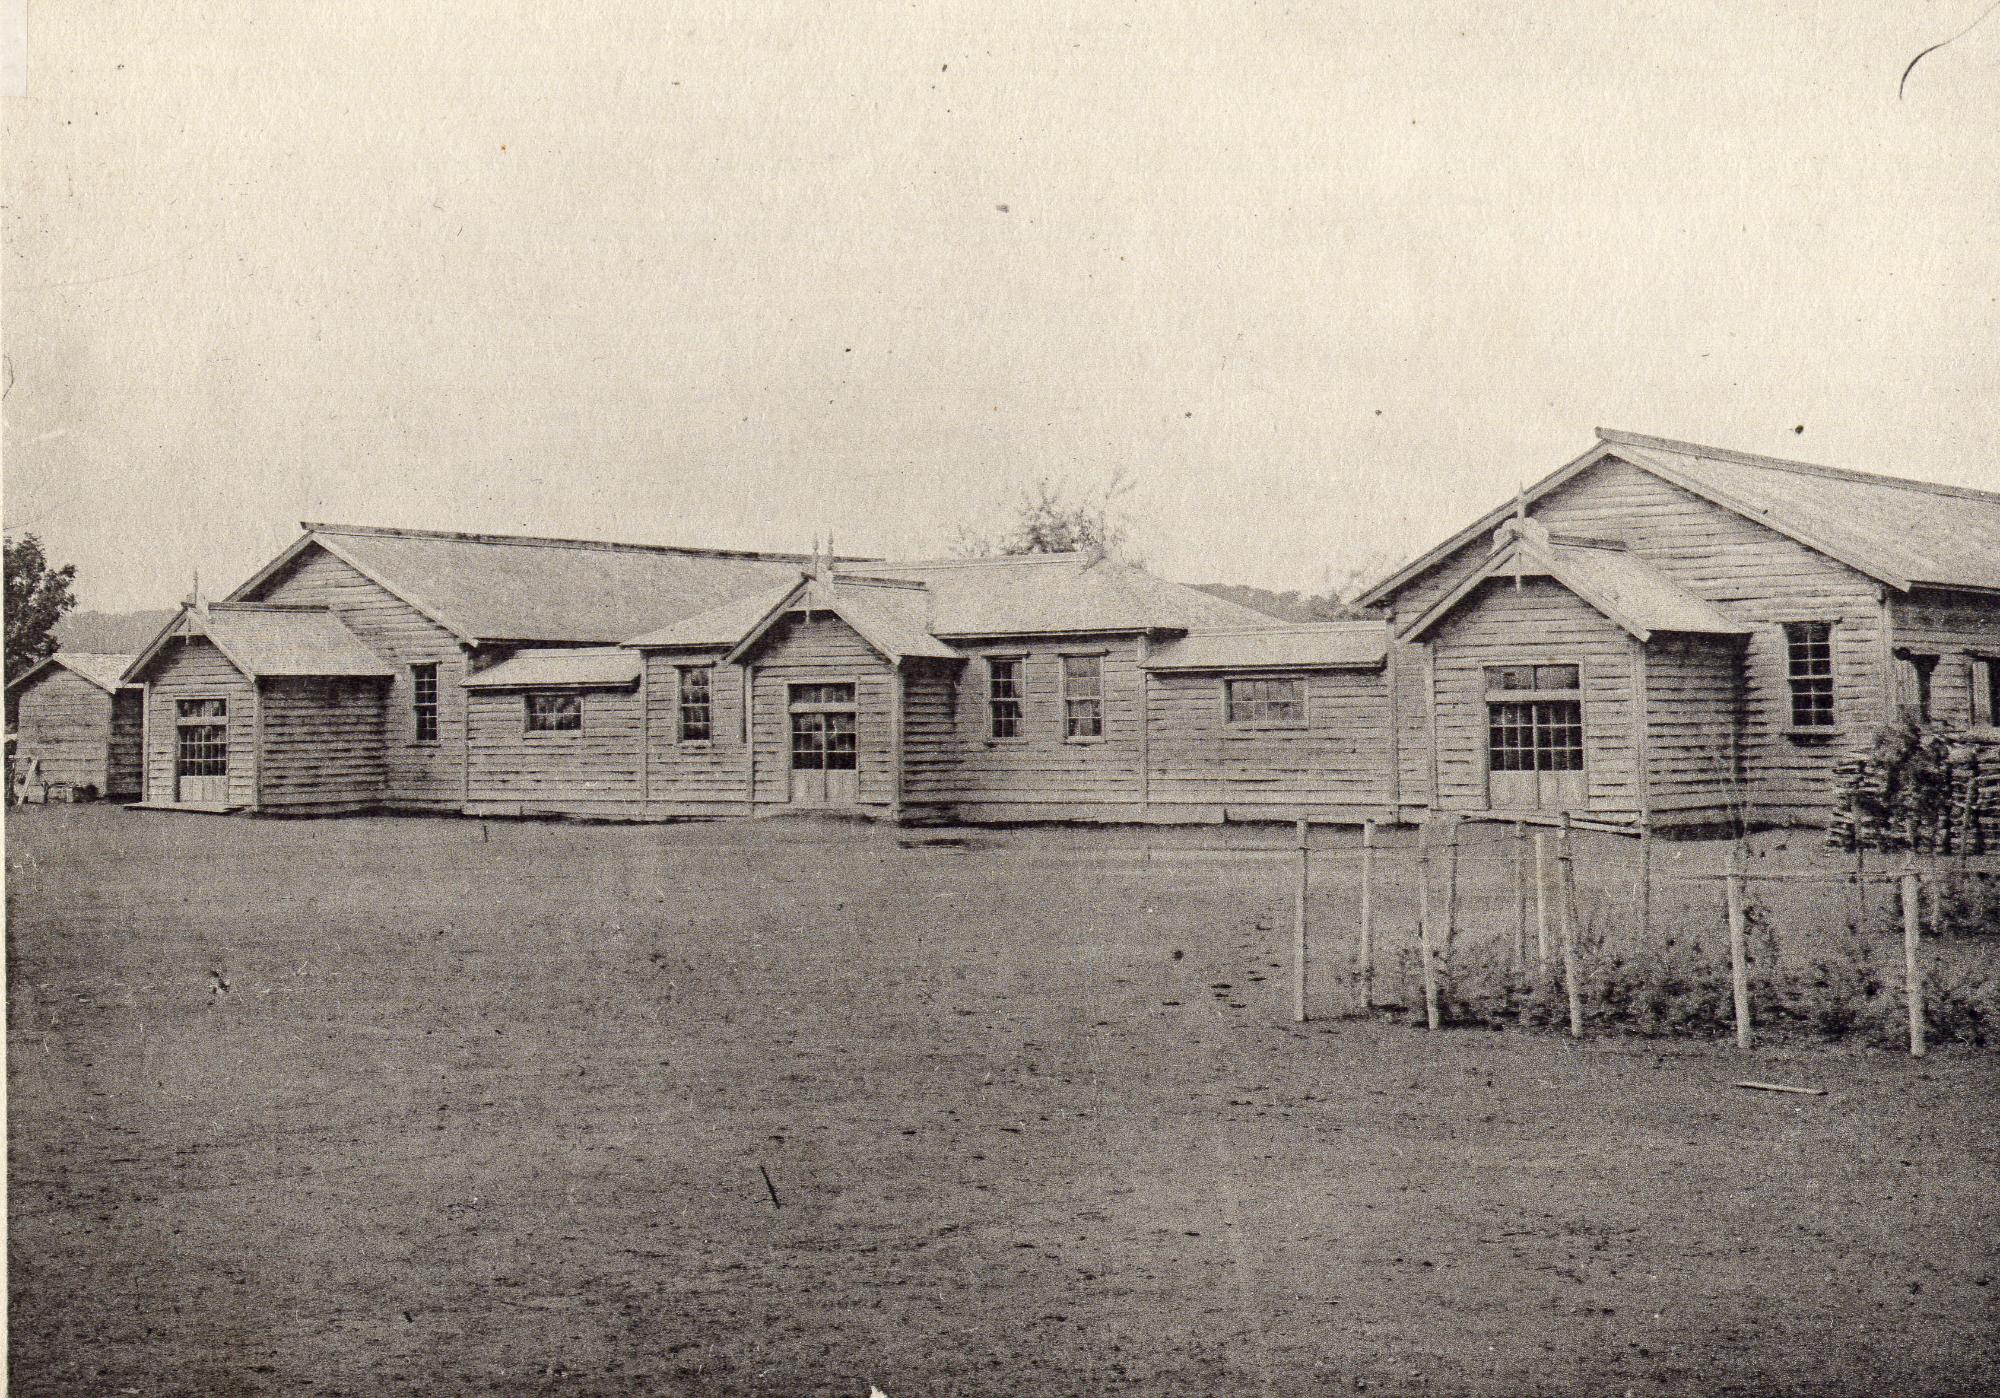 3棟の校舎が屋根付きの渡り廊下で繋がっている大正時代の上士別小学校の校舎の白黒写真